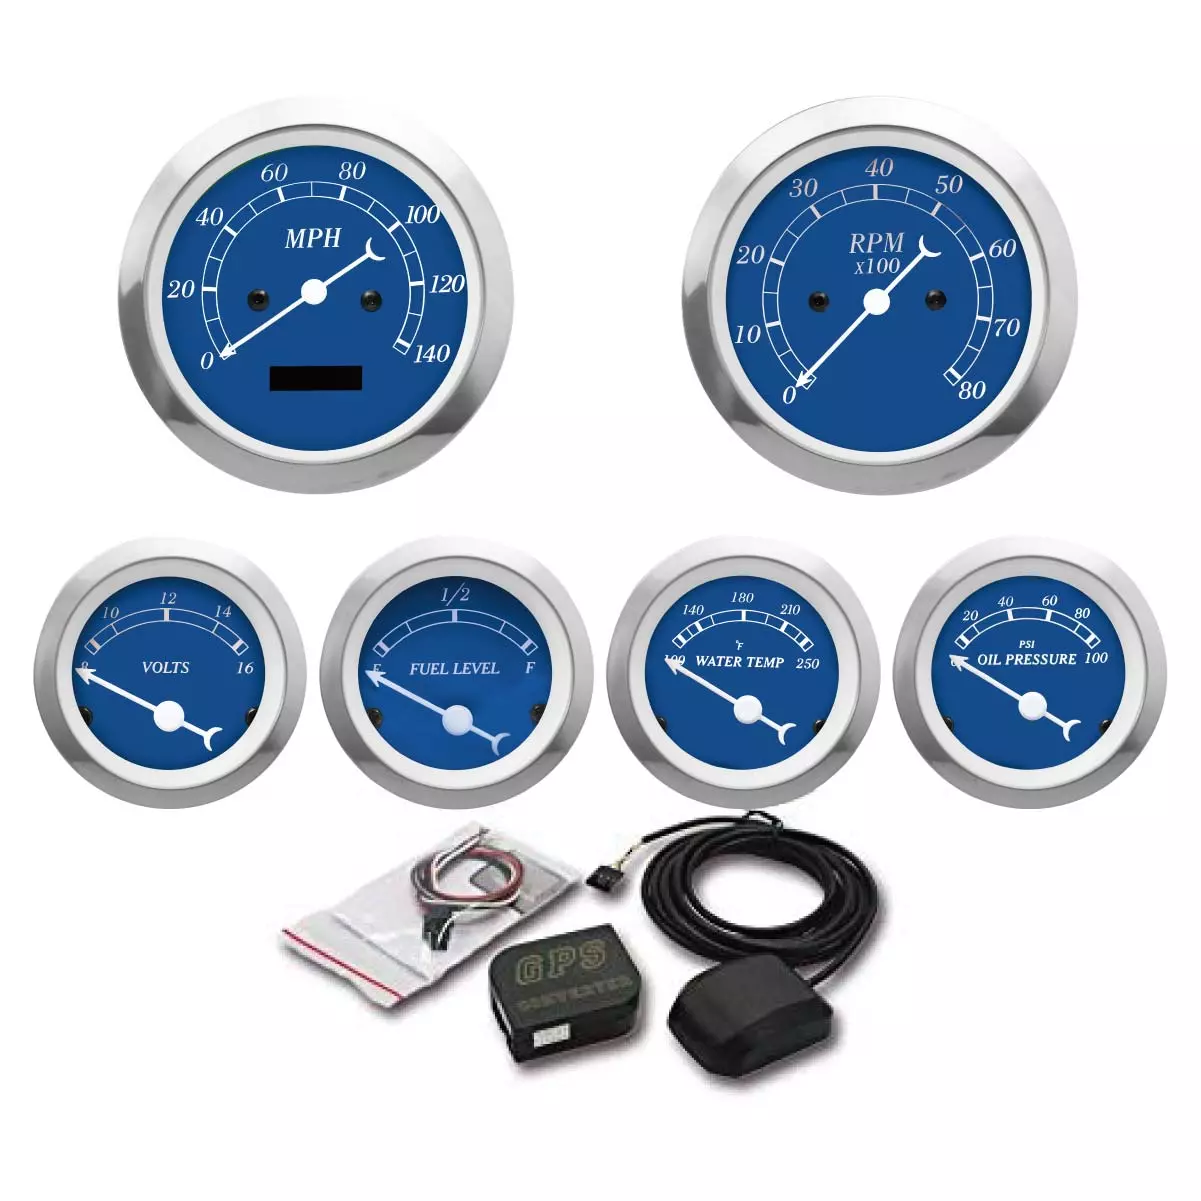 MOTOR METER RACING Digital Odometer Blue Dial Dashboard 6 Gauge Set GPS Electrical Speedometer/Tachometer/Fuel Level/Voltmeter/Water Temp/Oil Pressure